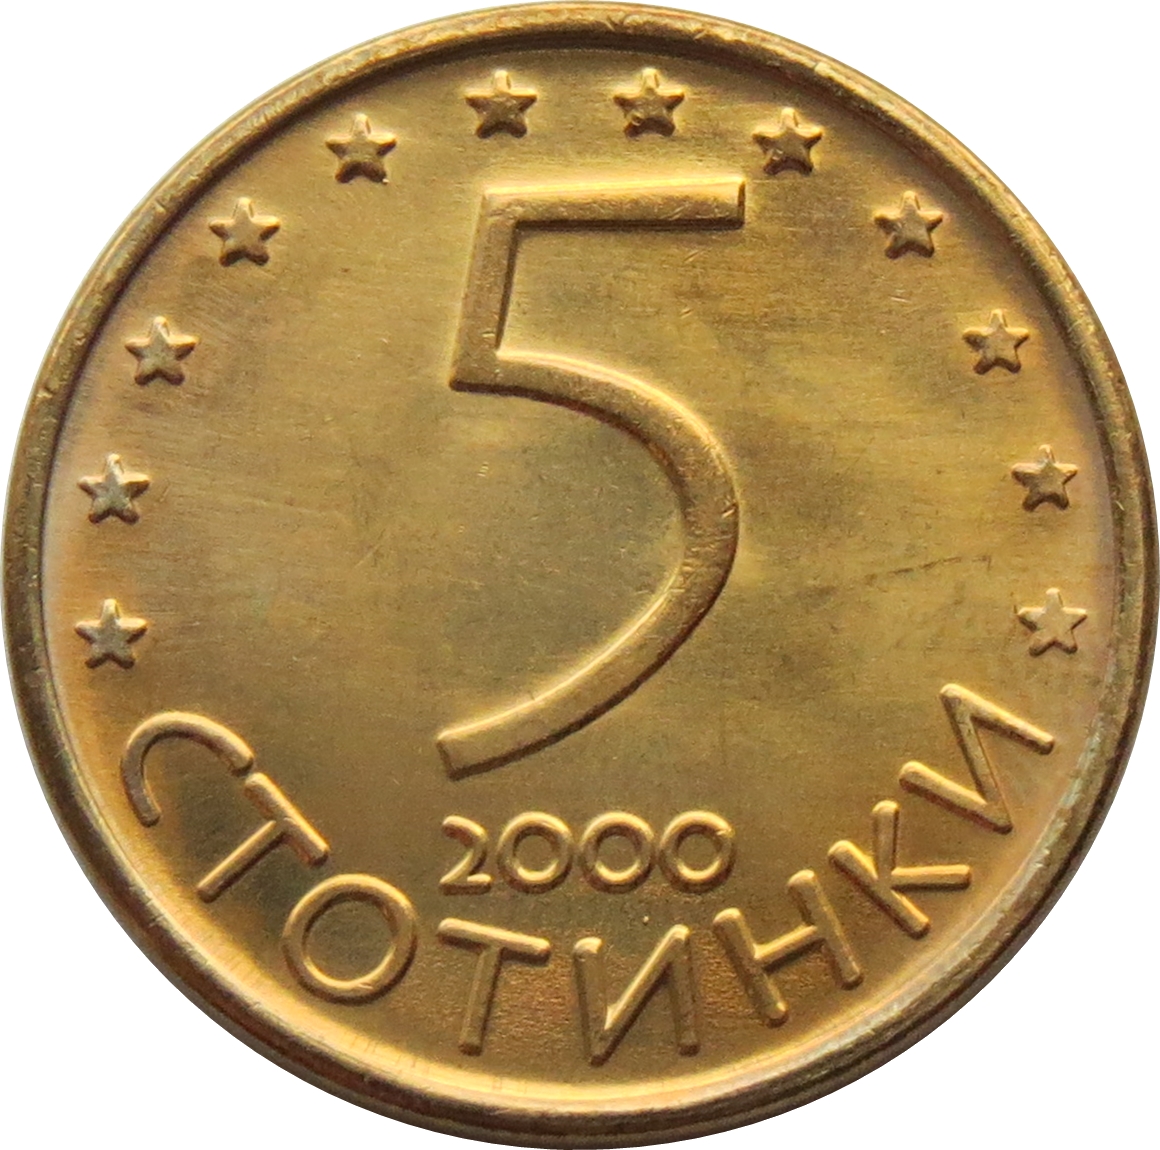 Касова бележка за 5 стотинки участва в лотарията на НАП